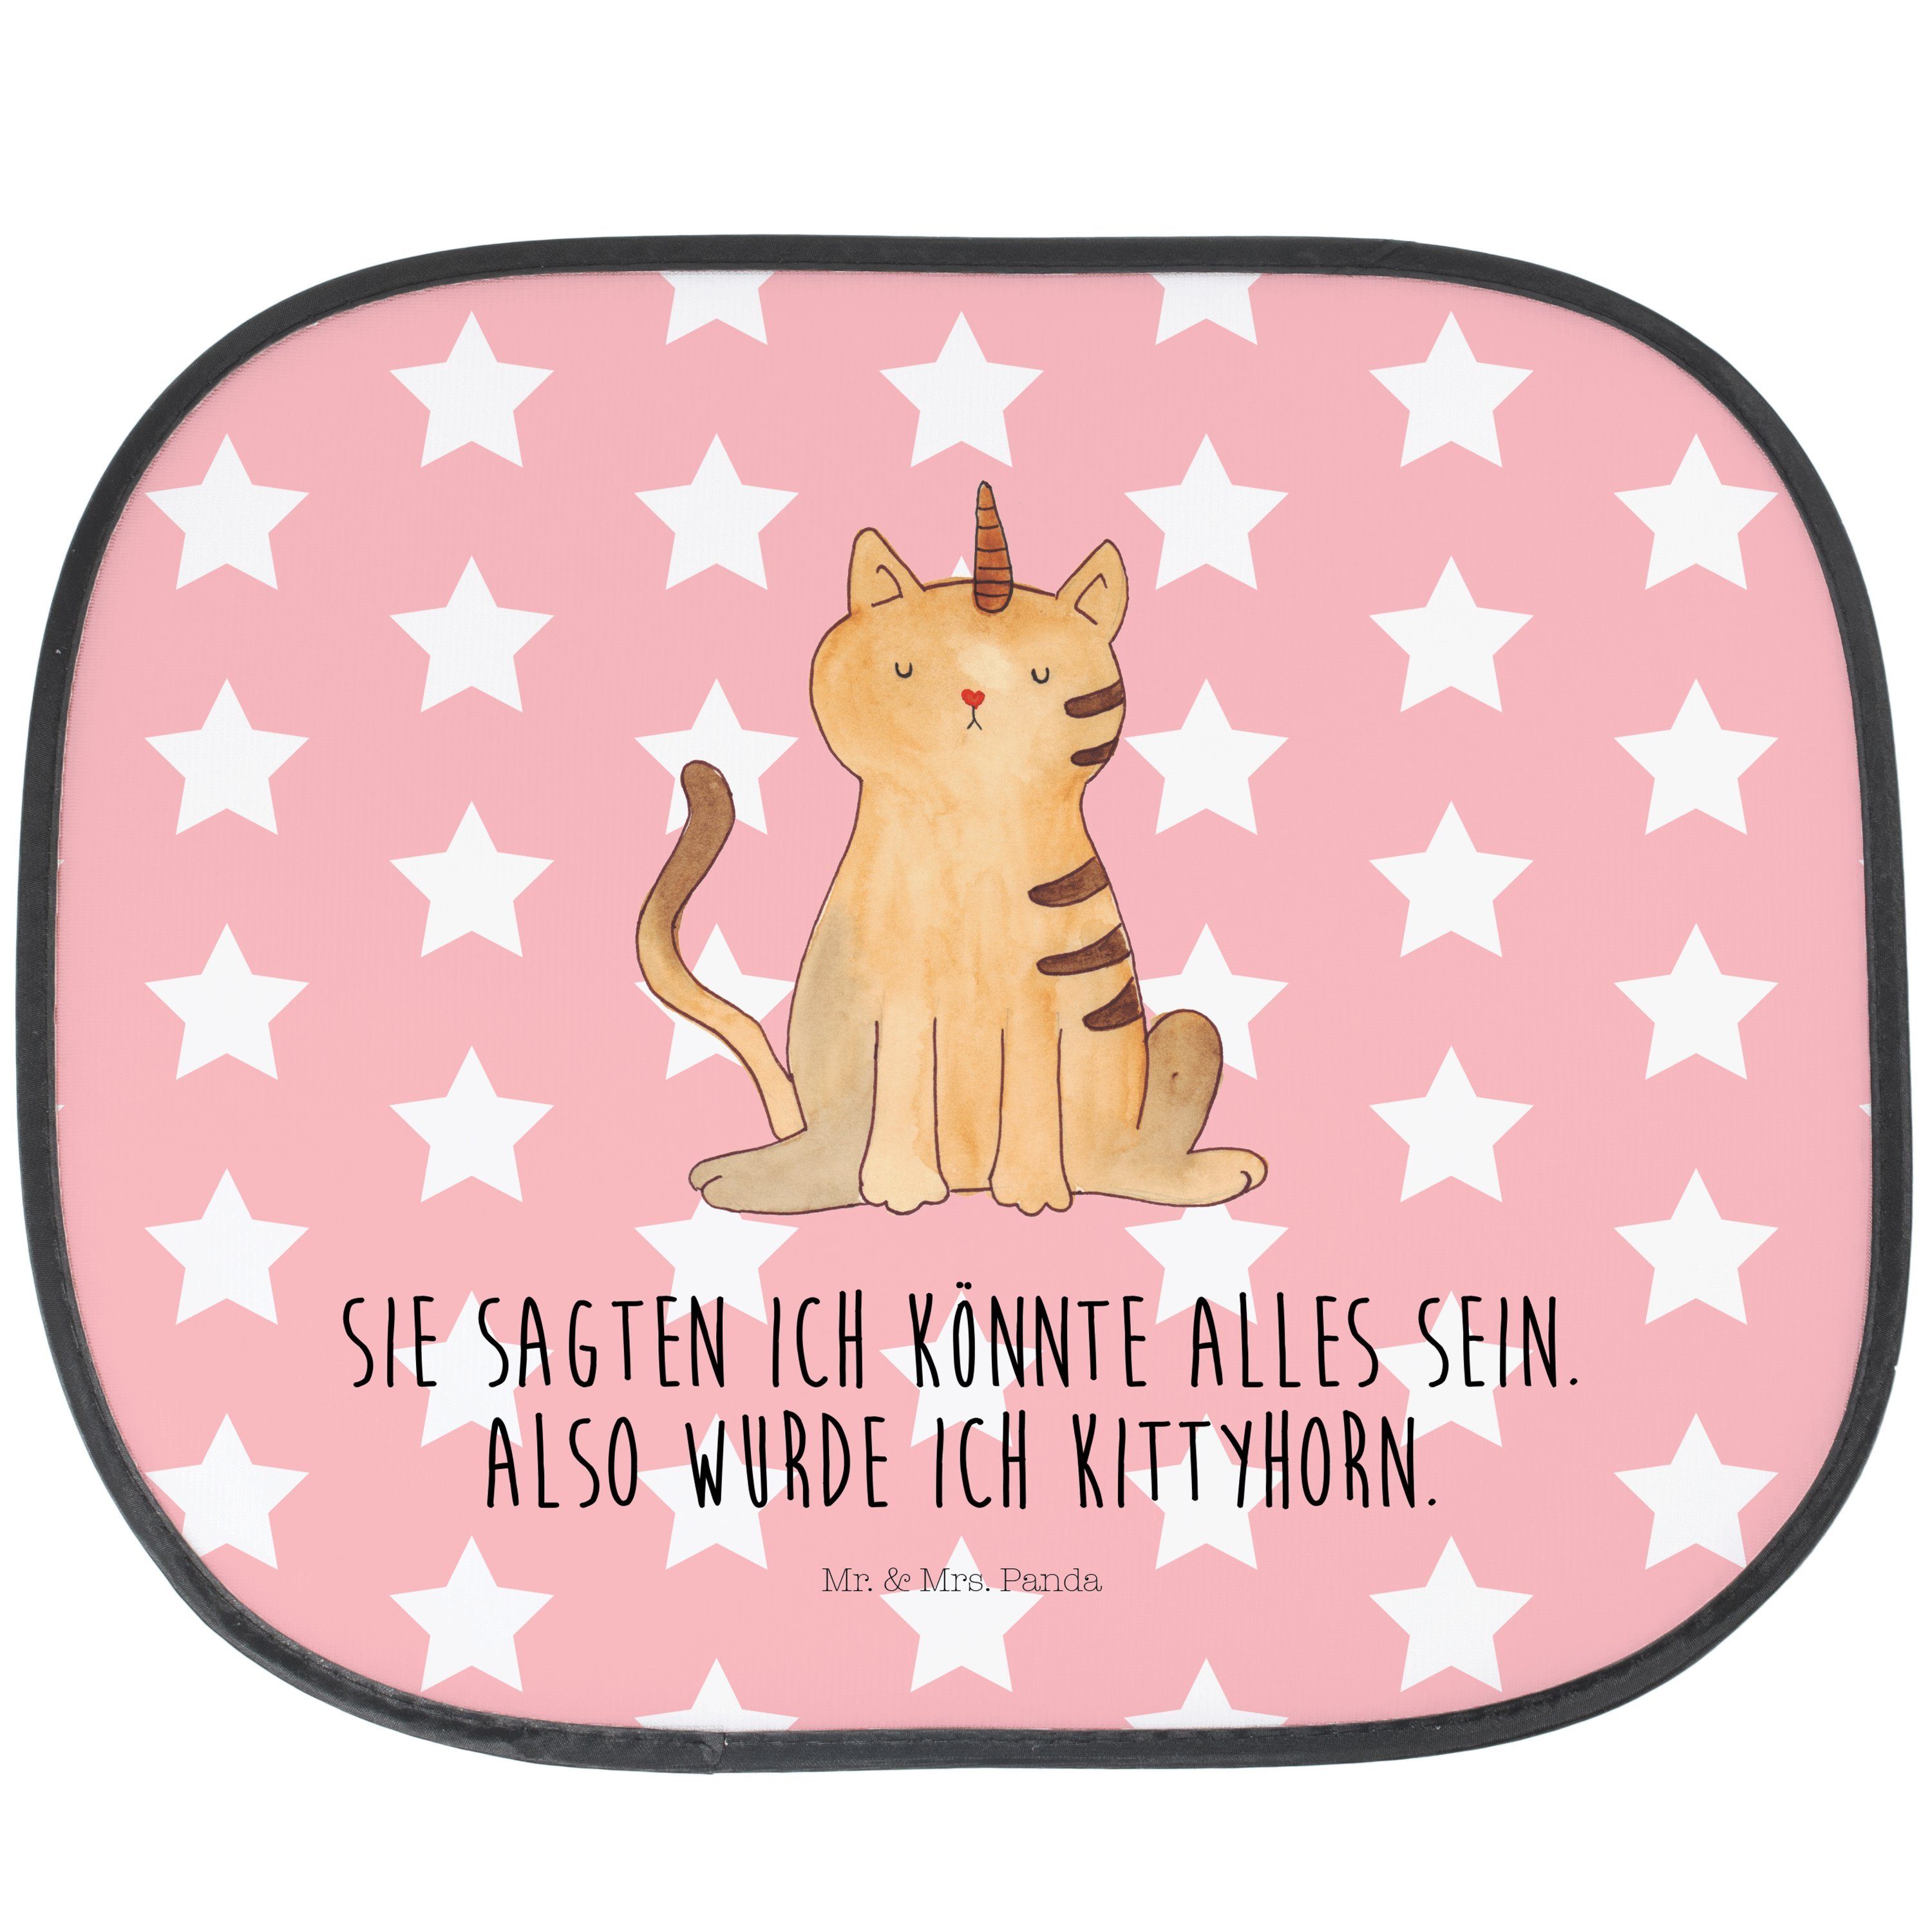 Sonnenschutz Einhorn Katze - Rot Pastell - Geschenk, Sonnenschutz Baby, Katzer, So, Mr. & Mrs. Panda, Seidenmatt